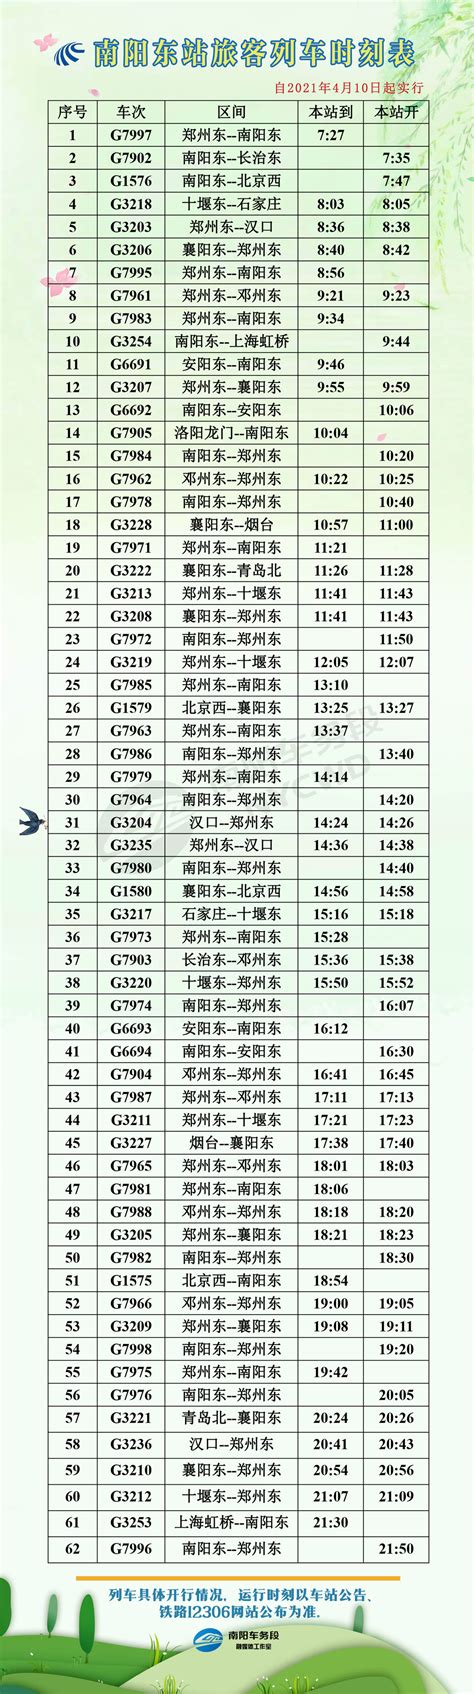 2017年10月 出口列车时刻表 - 上海岸驳国际货运代理有限公司